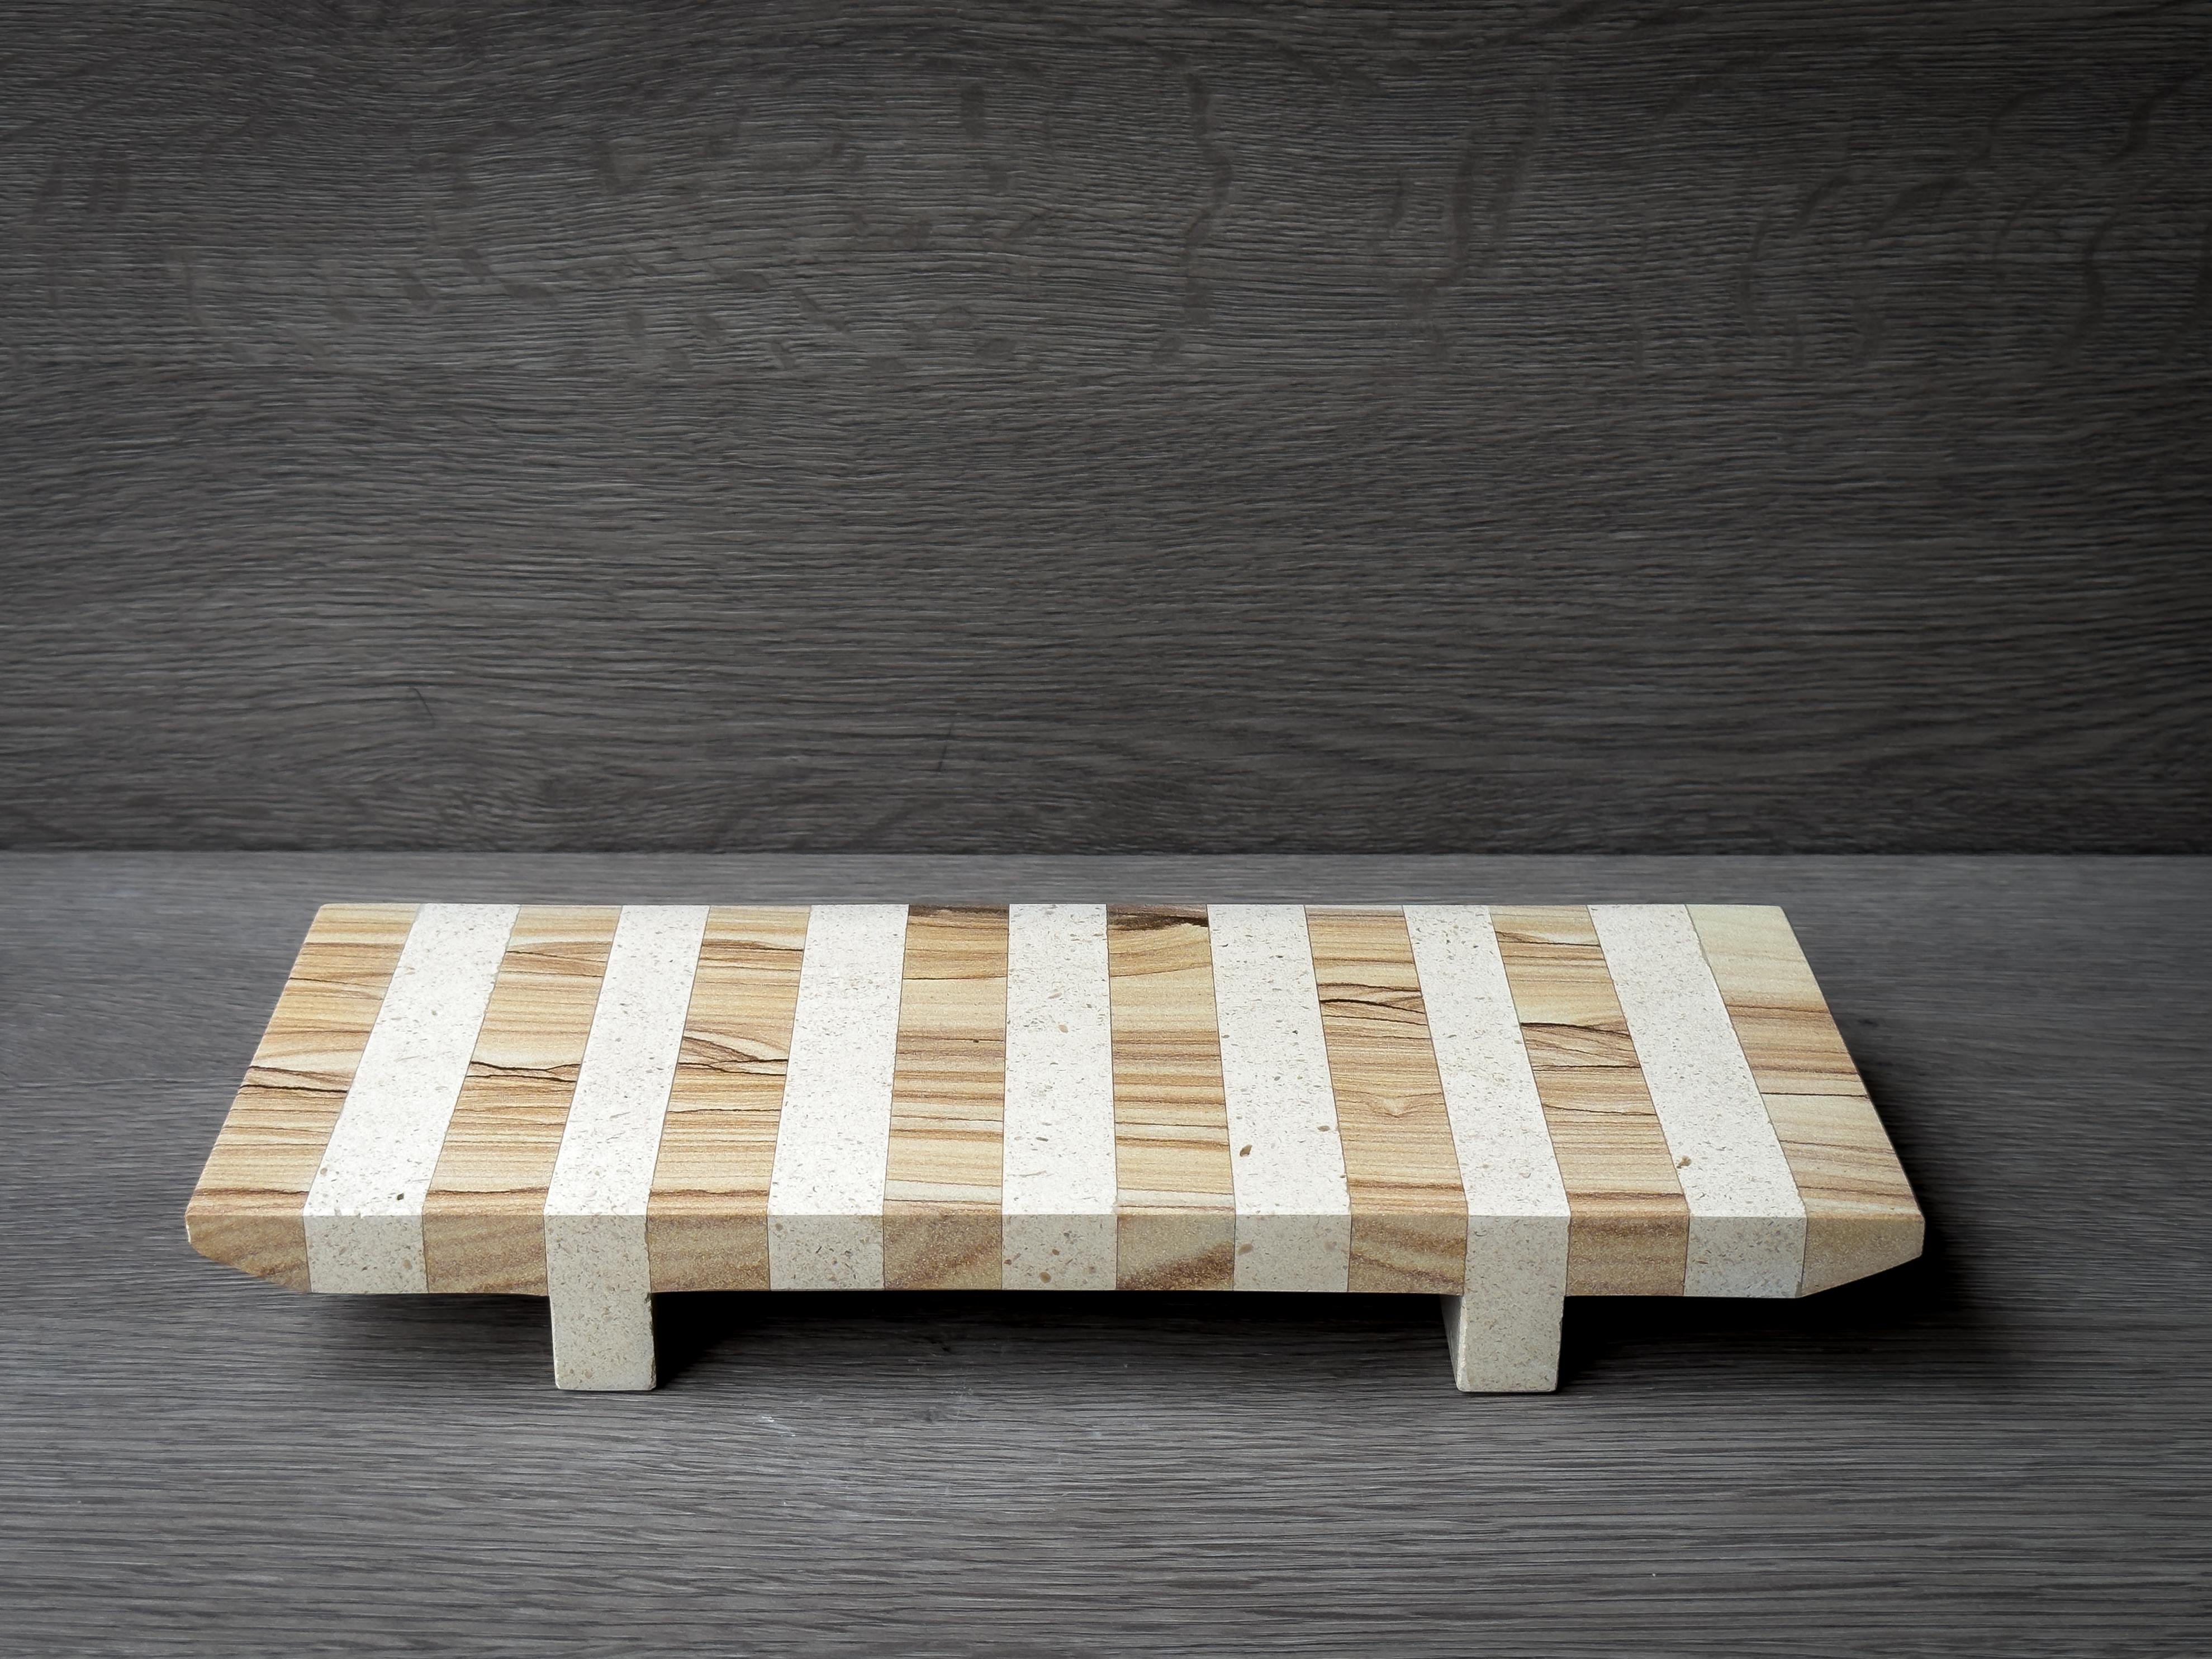 Das OMA-Tablett ist eine elegante Verschmelzung von Natur und Design, die einen Hauch von japanischer Zen-Sensibilität in Ihren Raum bringt. Dieses aus sorgfältig ausgewählten Sand- und Kalksteinstreifen gefertigte Tablett ist ein minimalistisches